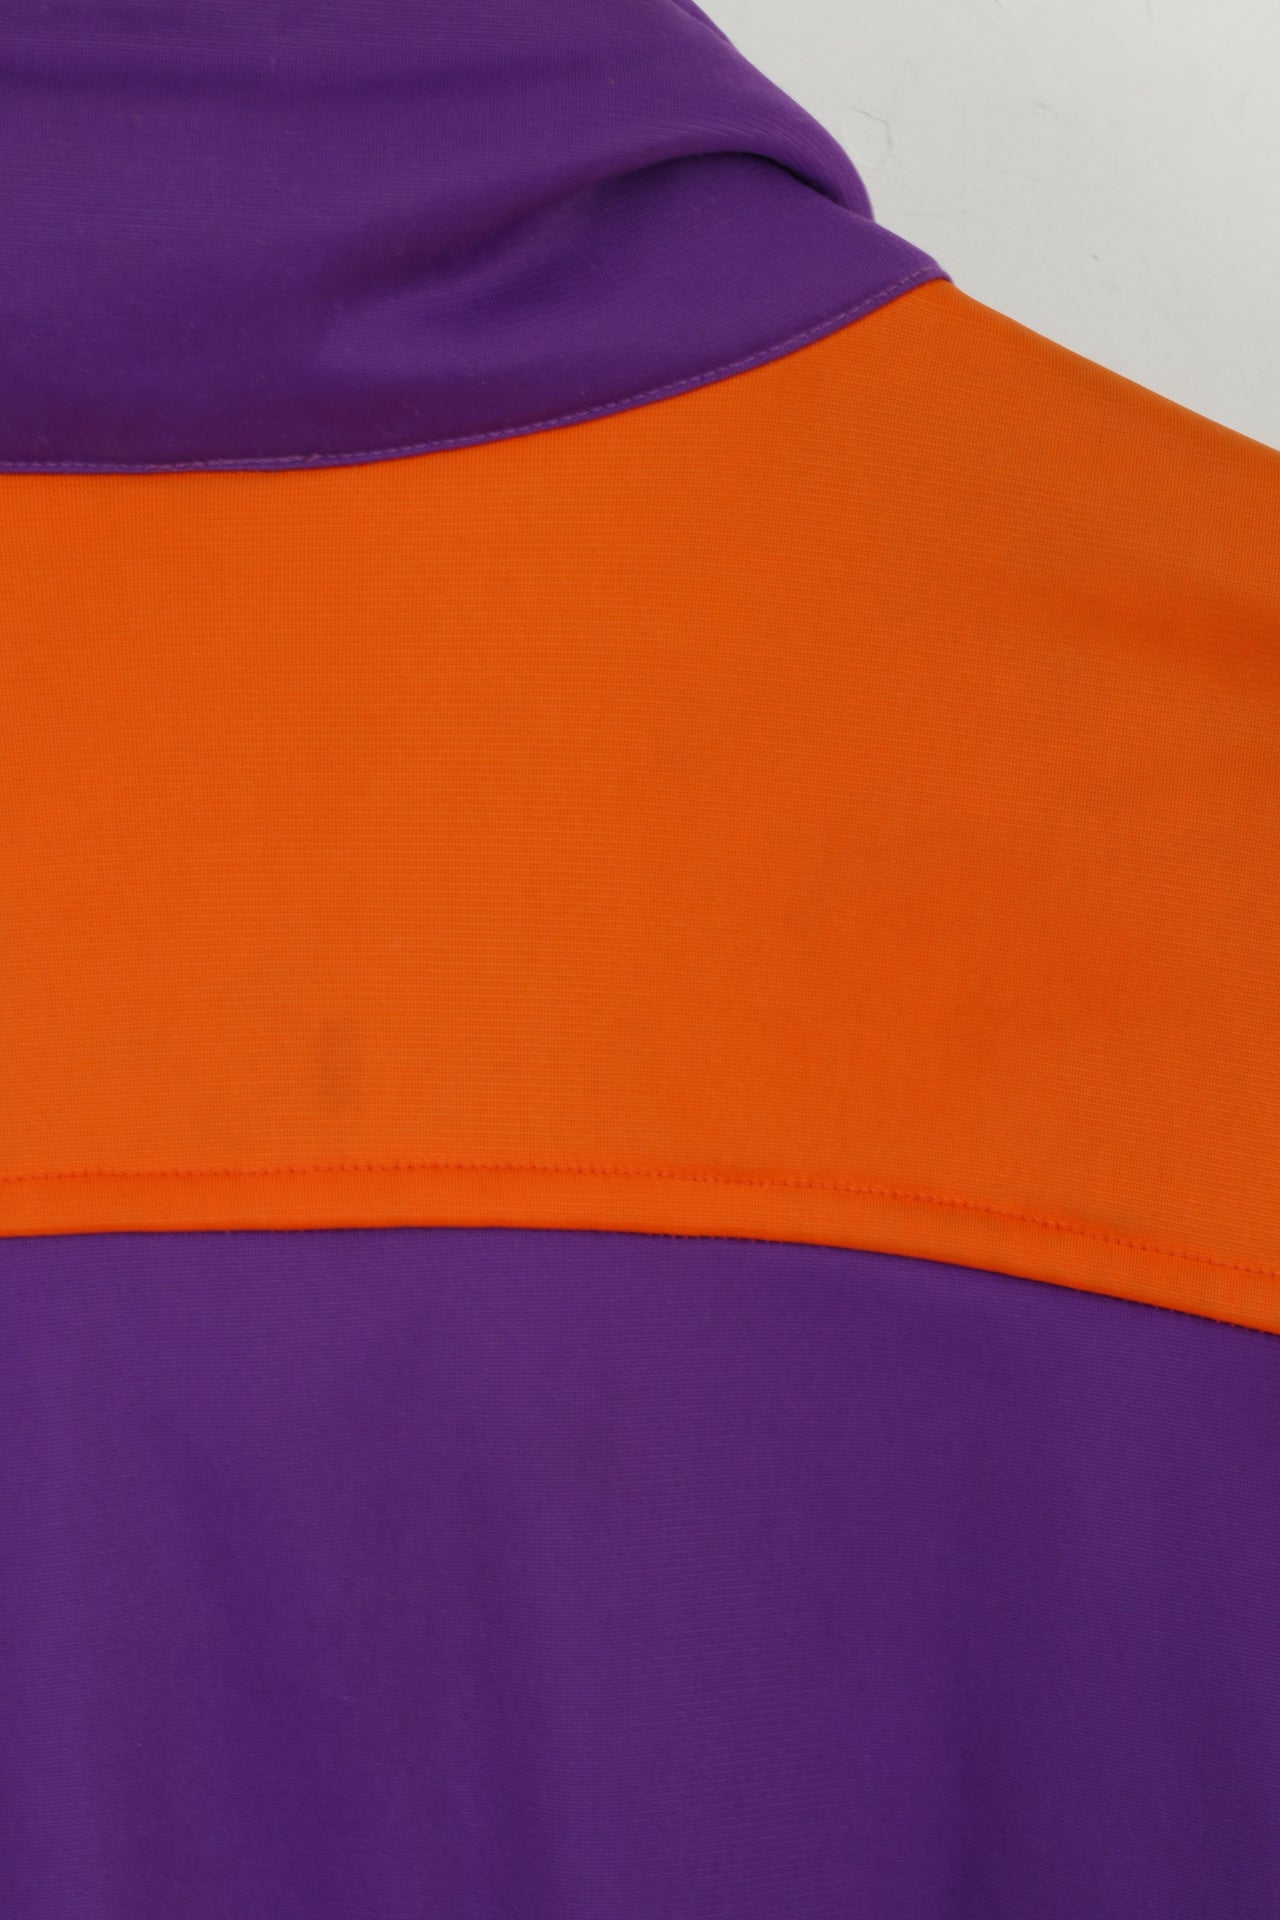 Belfe Men 50 40 M Sweatshirt Purple Vintage Zip Up Removable Sleeve Top